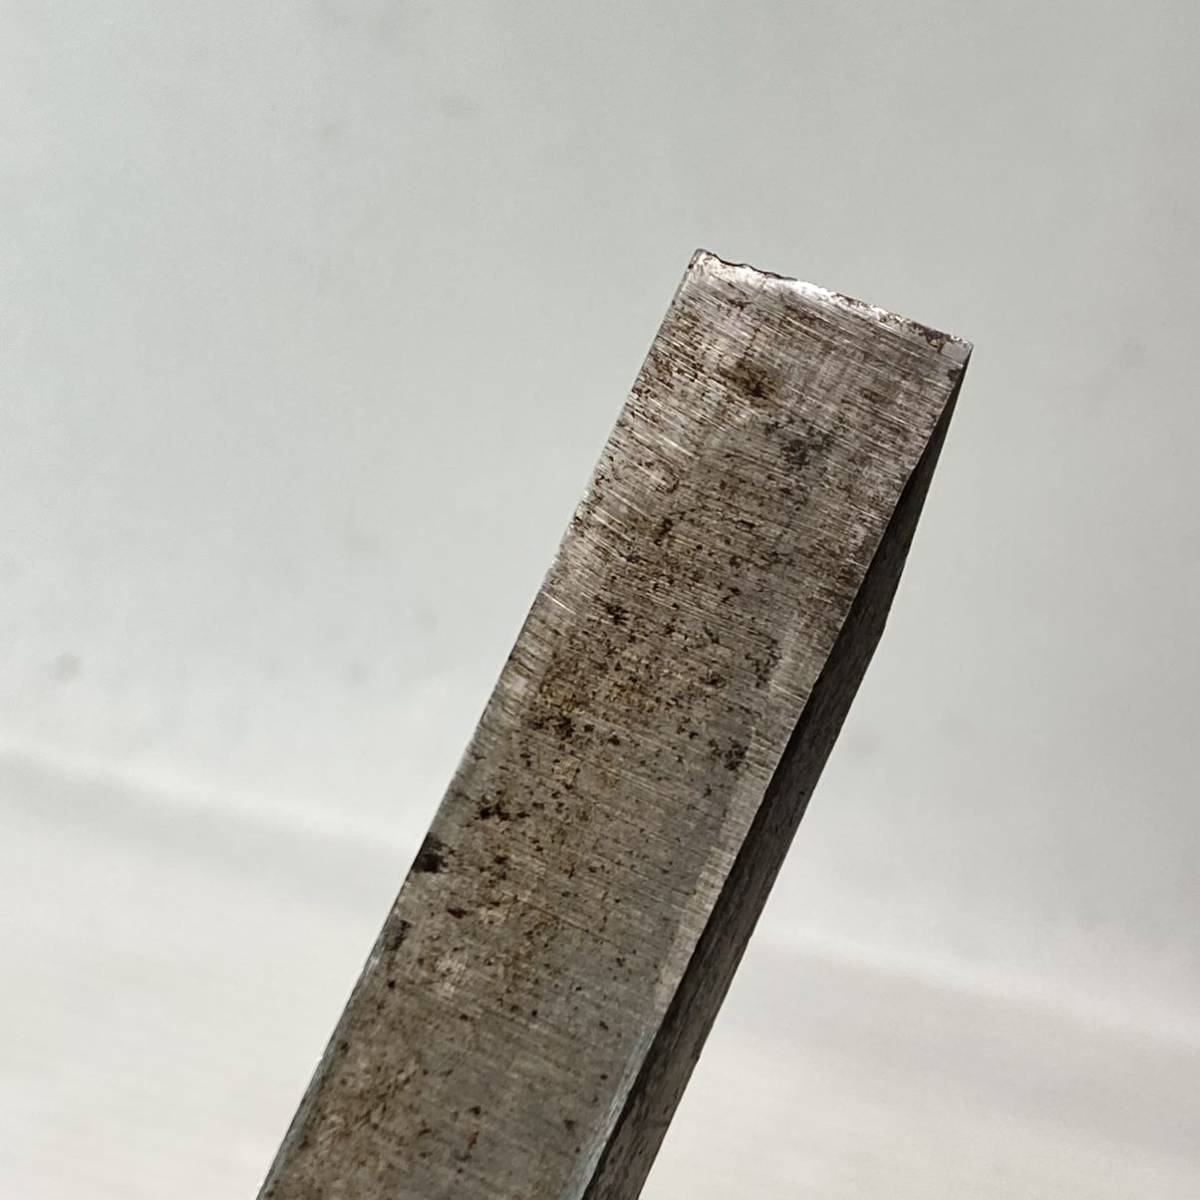 .?. блохи только плотничный инструмент лезвие ширина 15mm старый инструмент работник инструмент металлический материал сталь 